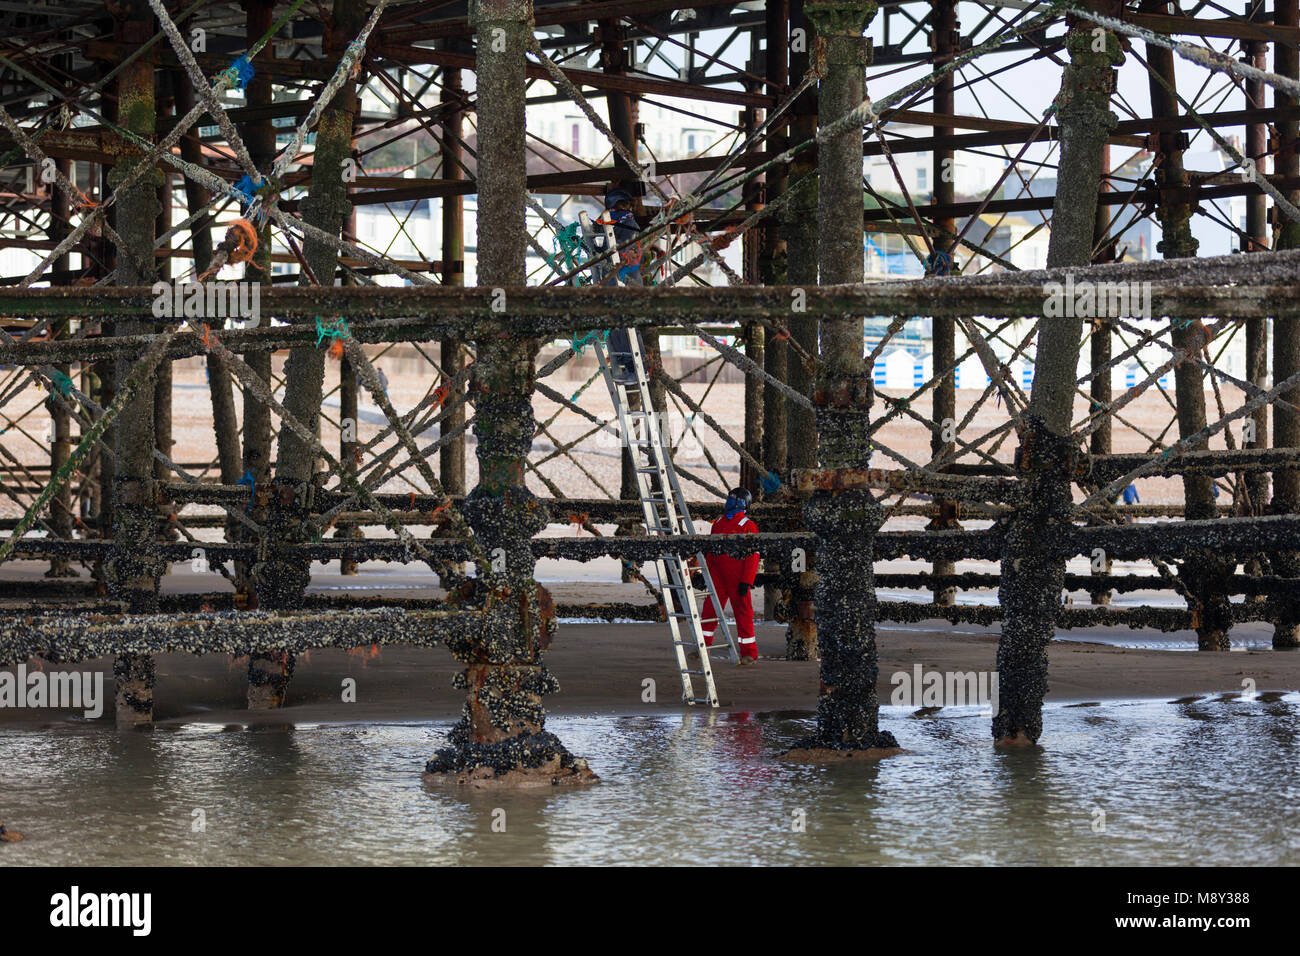 Inquinamento Ambientale di hastings pier, un uomo è visto salendo i pilastri del molo al fine di pulire tutte le tracce di corda e materie plastiche, Regno Unito Foto Stock